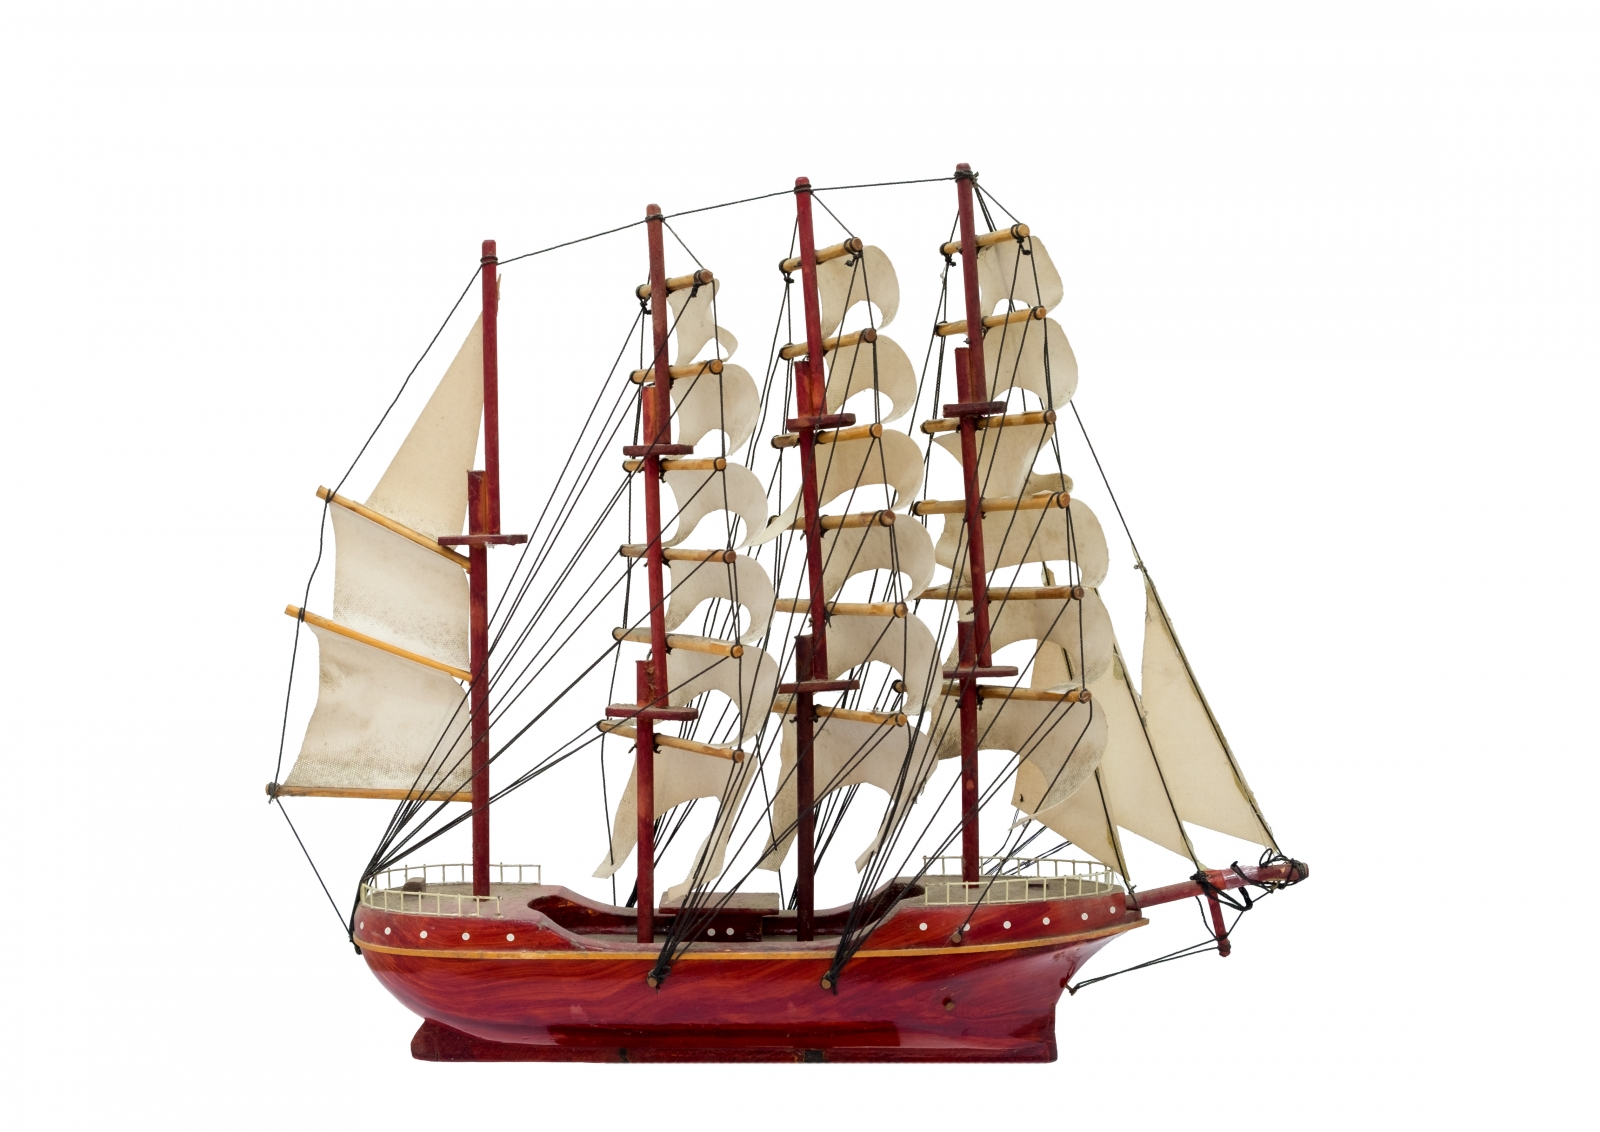 Barque ship